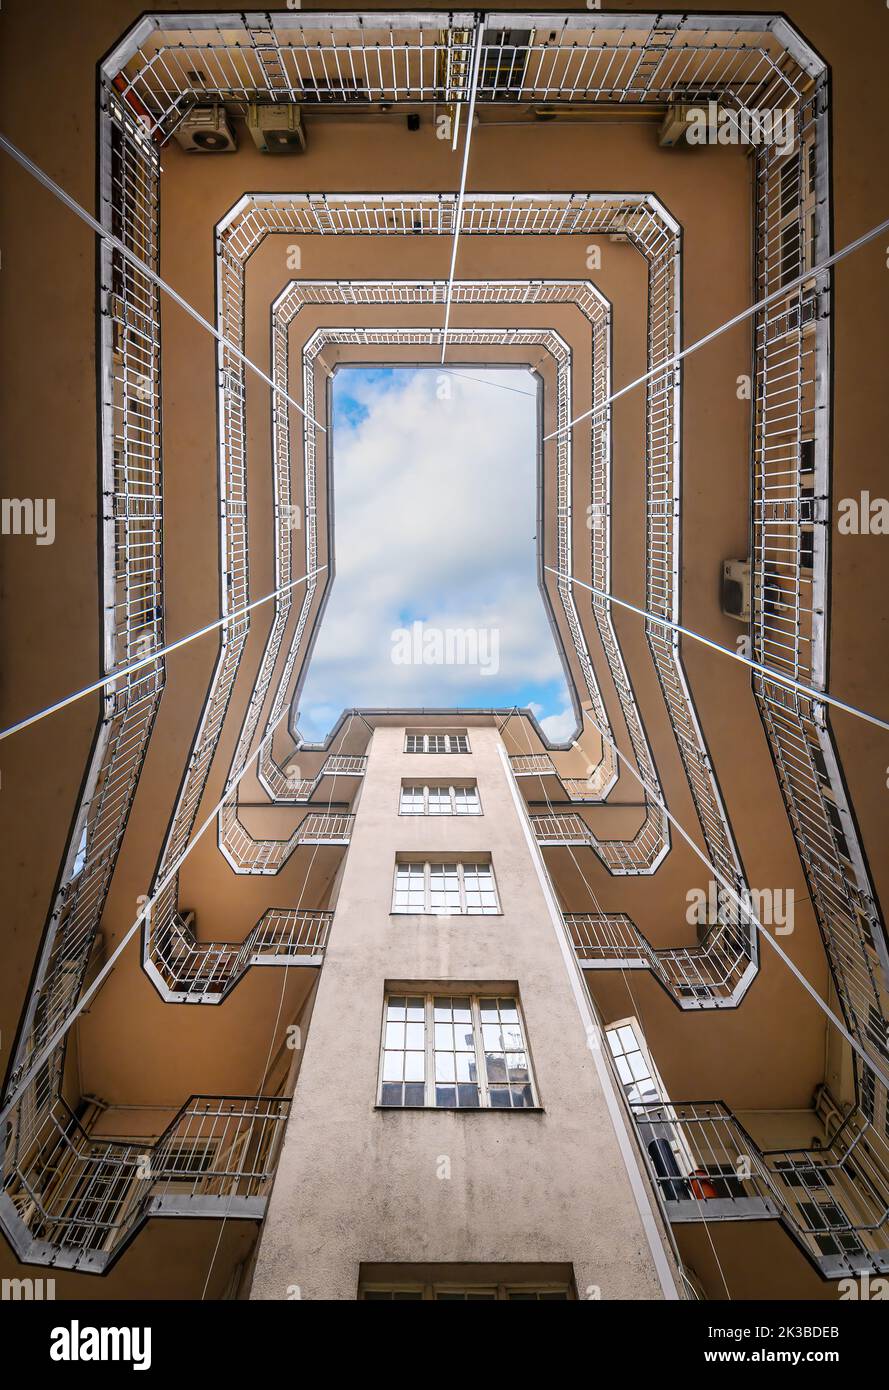 Fondo amplio ángulo de vista del histórico patio interior con hermosa fachada edificio complejo con cielo azul en las ventanas en Budapest. Forma geométrica Foto de stock